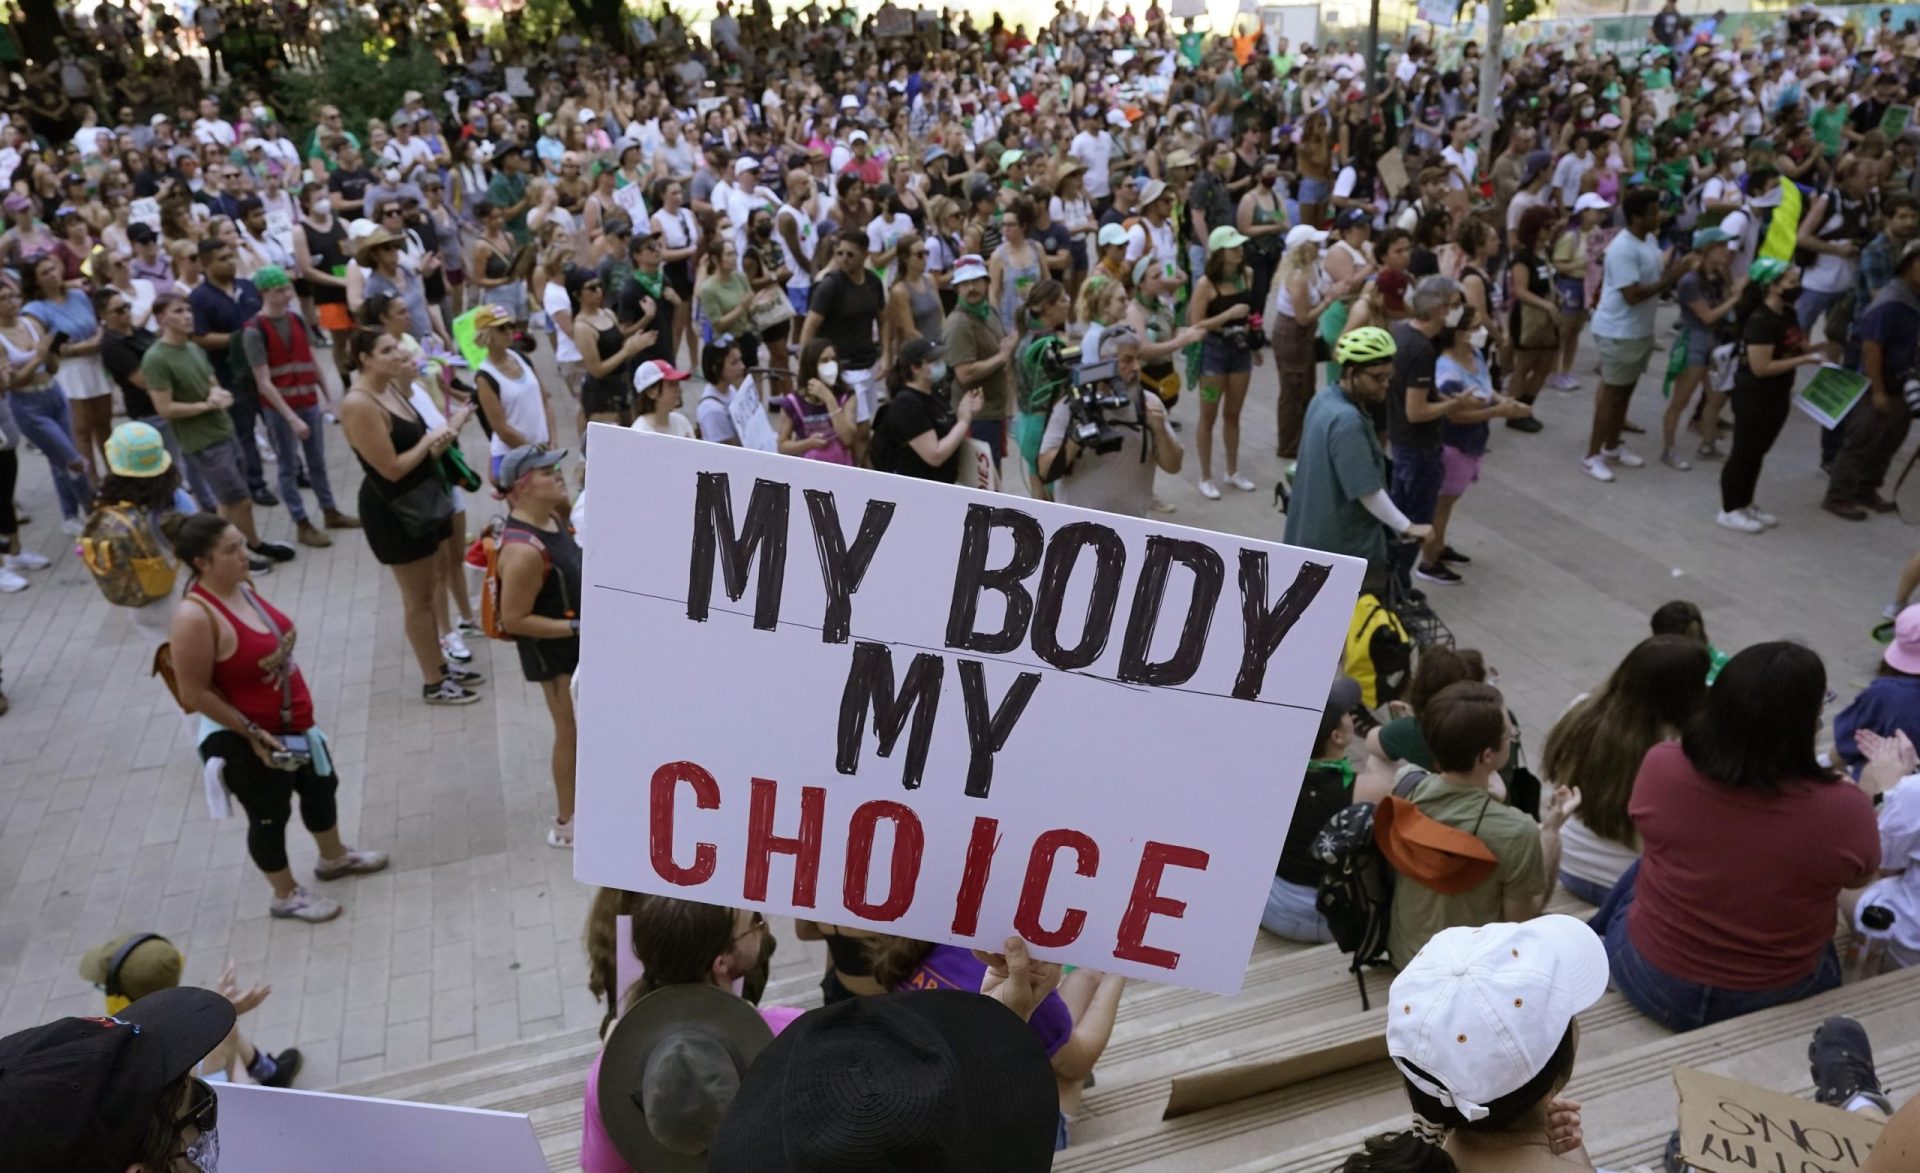 Los hospitales de Texas retrasan la atención por la ley del aborto, según una carta